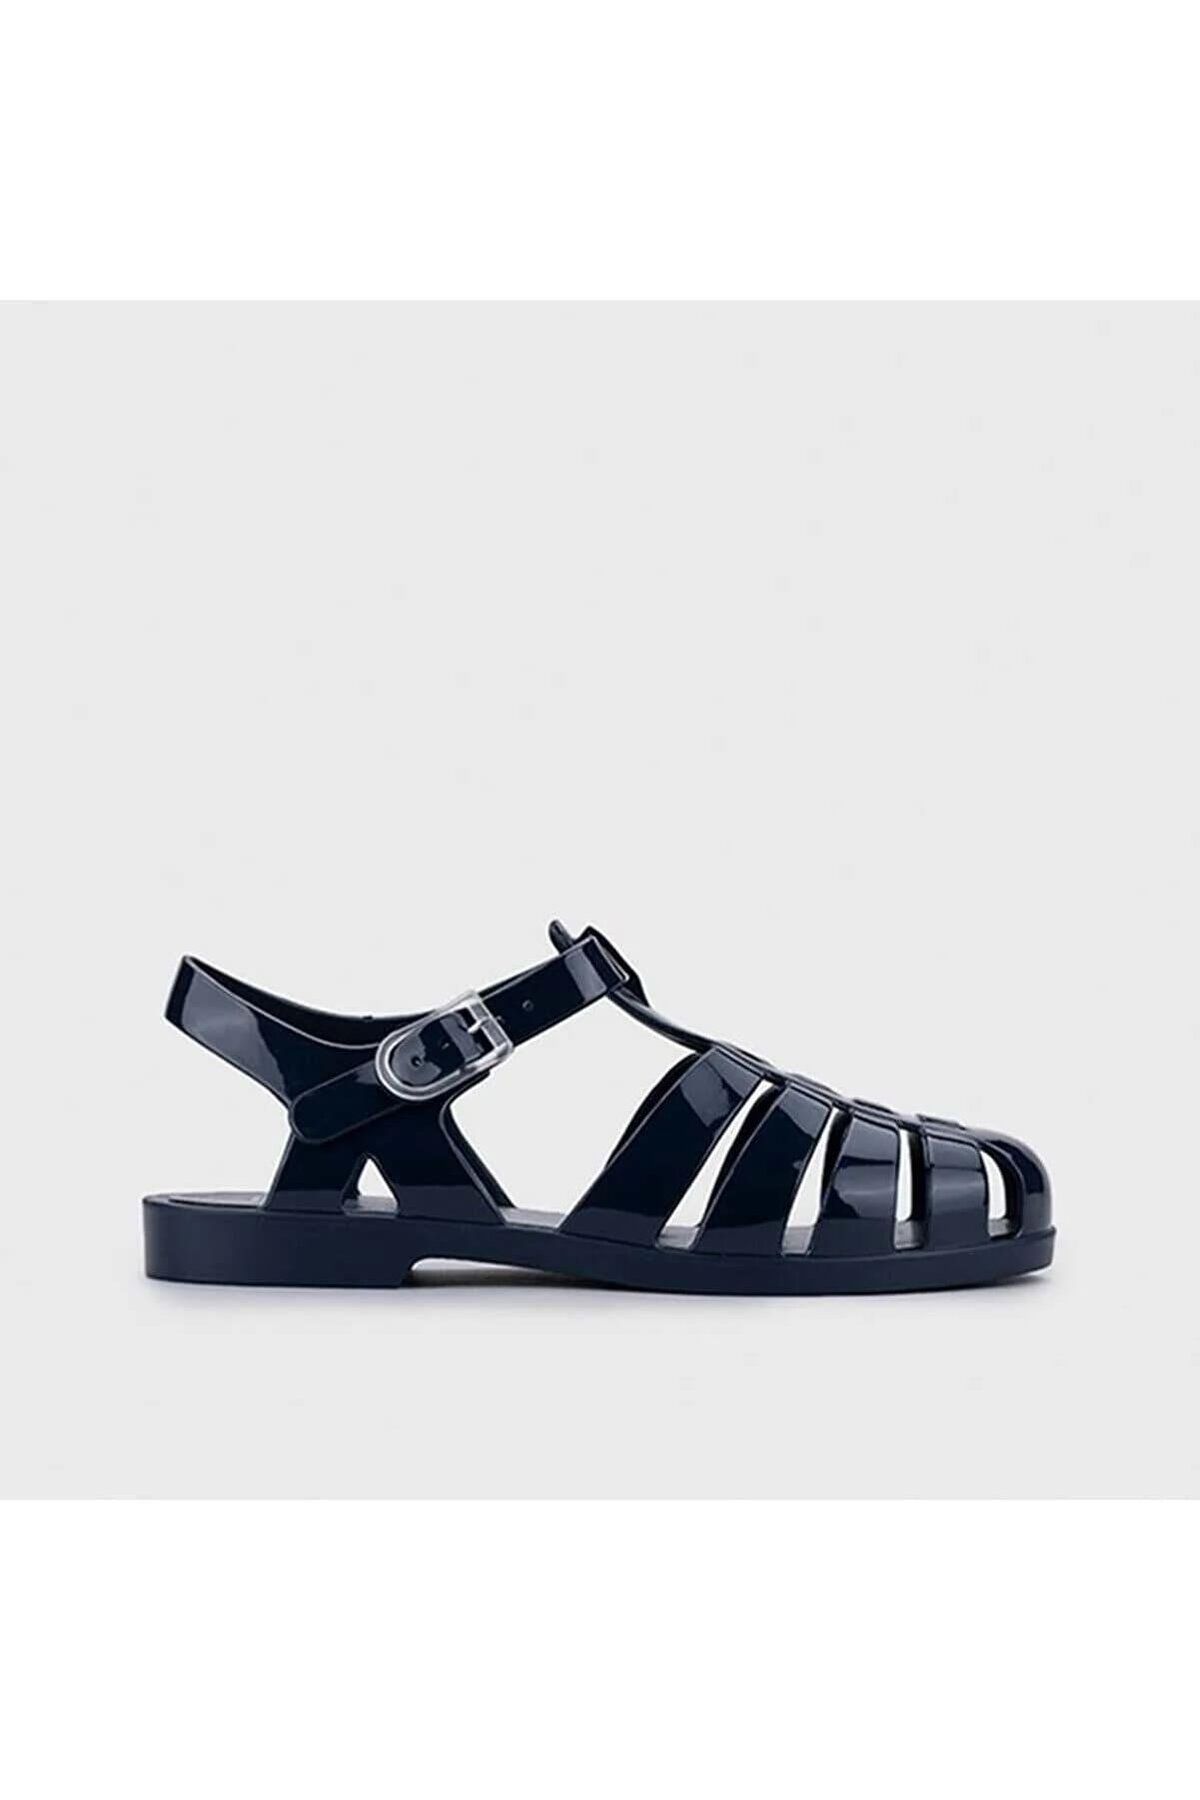 IGOR S10258 Siyah Kadın Sandalet Terlik Ayakkabı